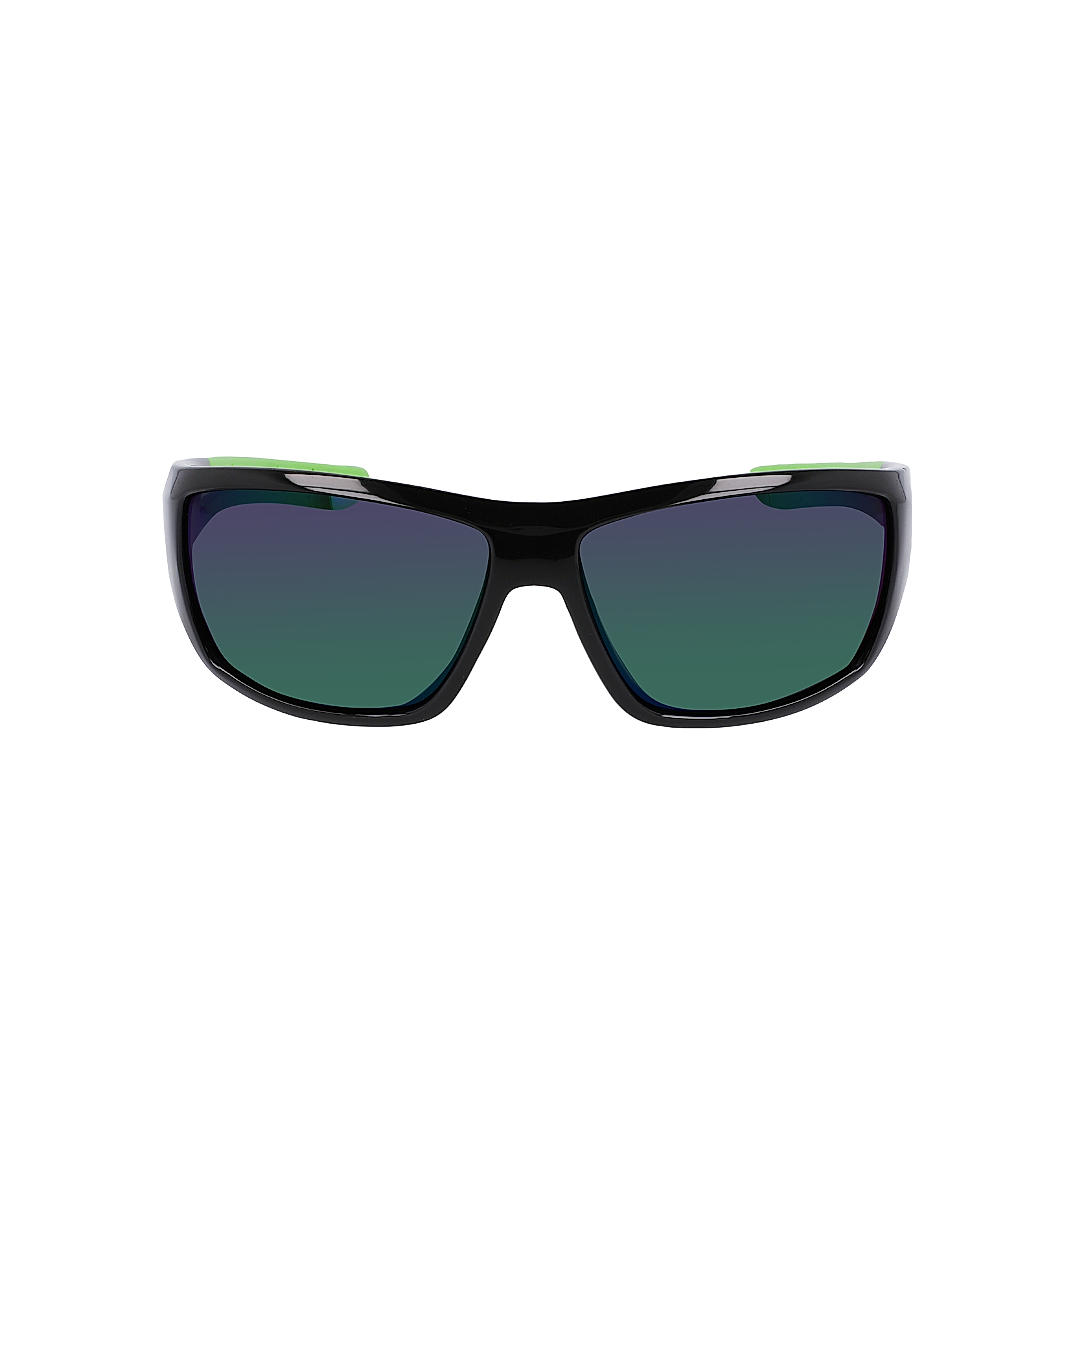 Buy Columbia Black Utilizer Sunglasses Online at Columbia